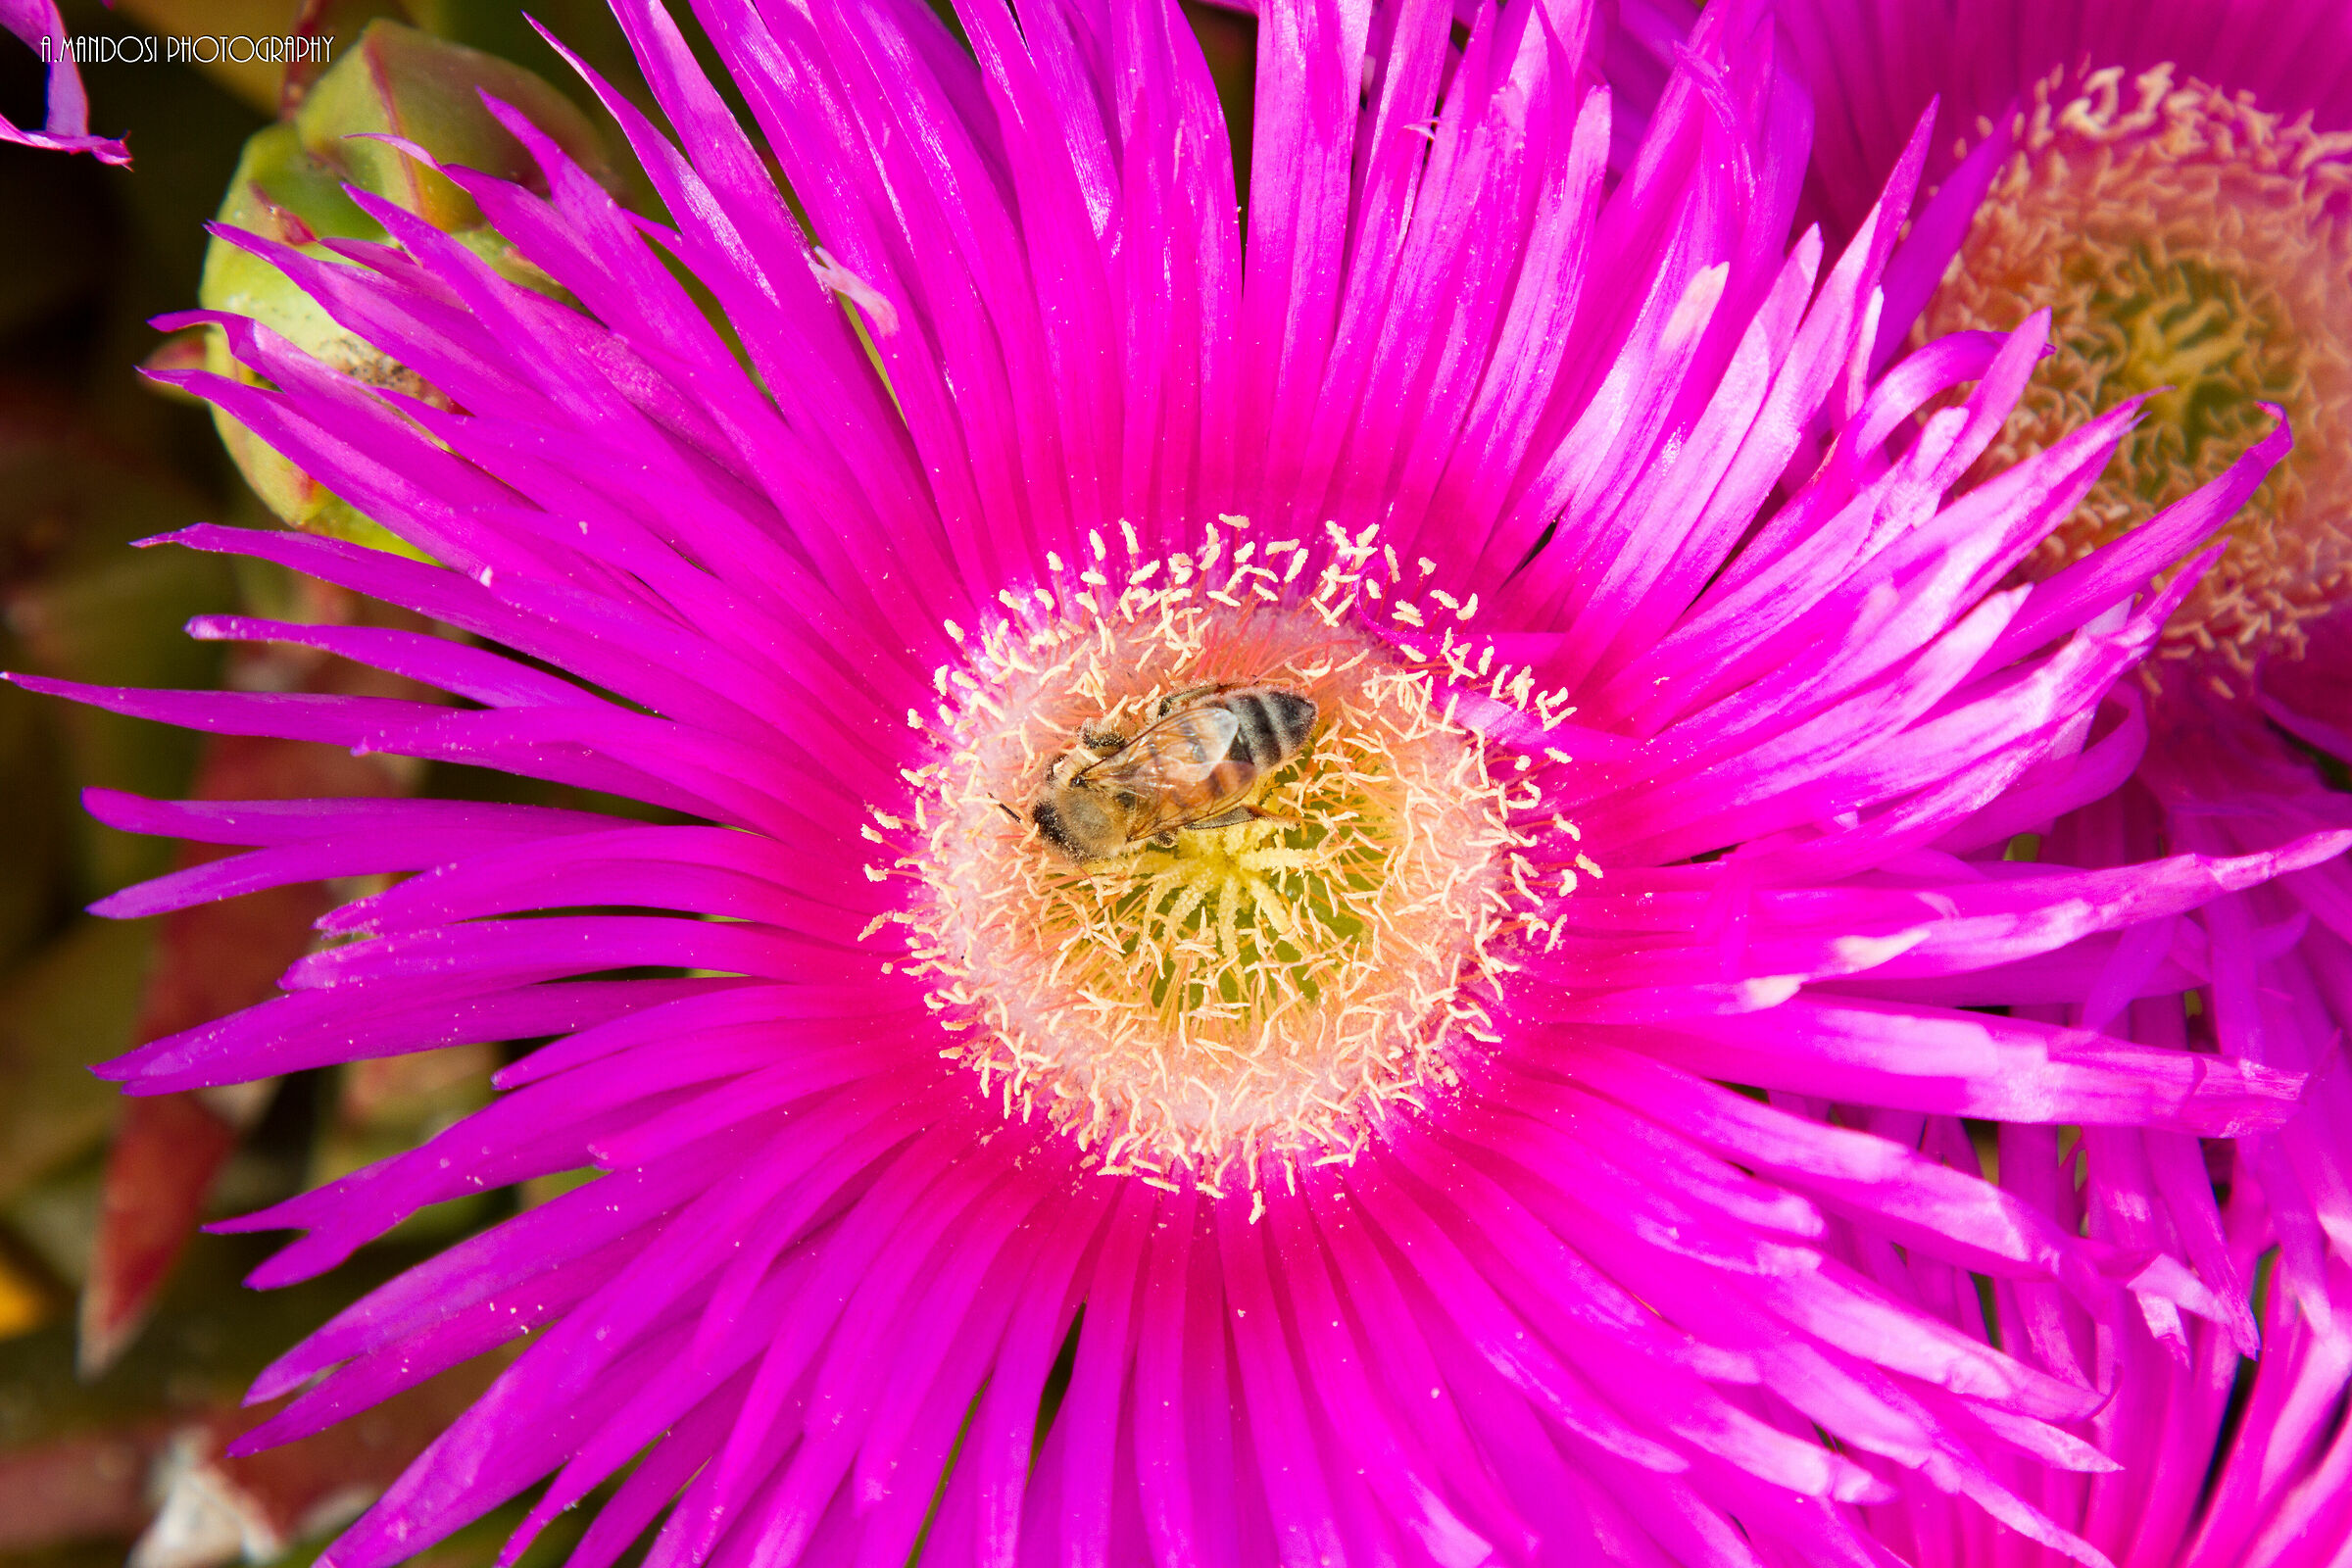 The Maia bee in fuchsia...